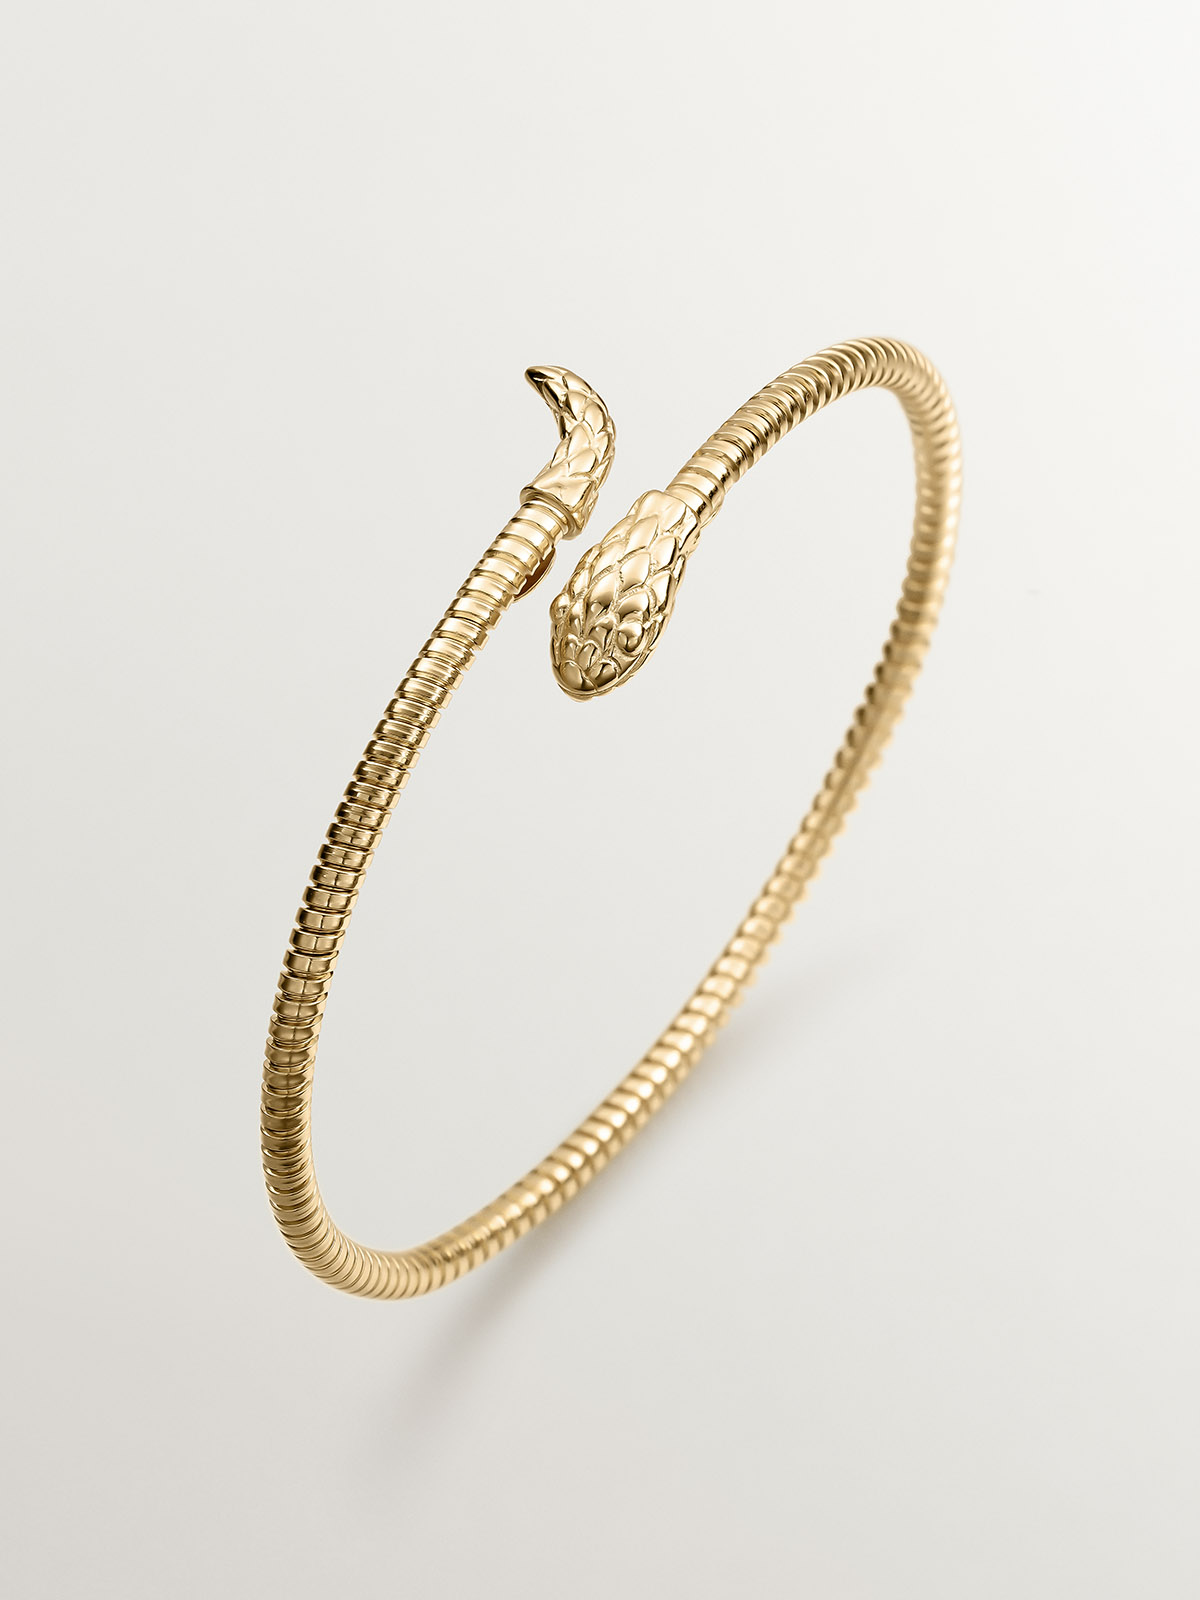 Brazalete de plata 925 bañada en oro amarillo de 18K con forma de serpiente